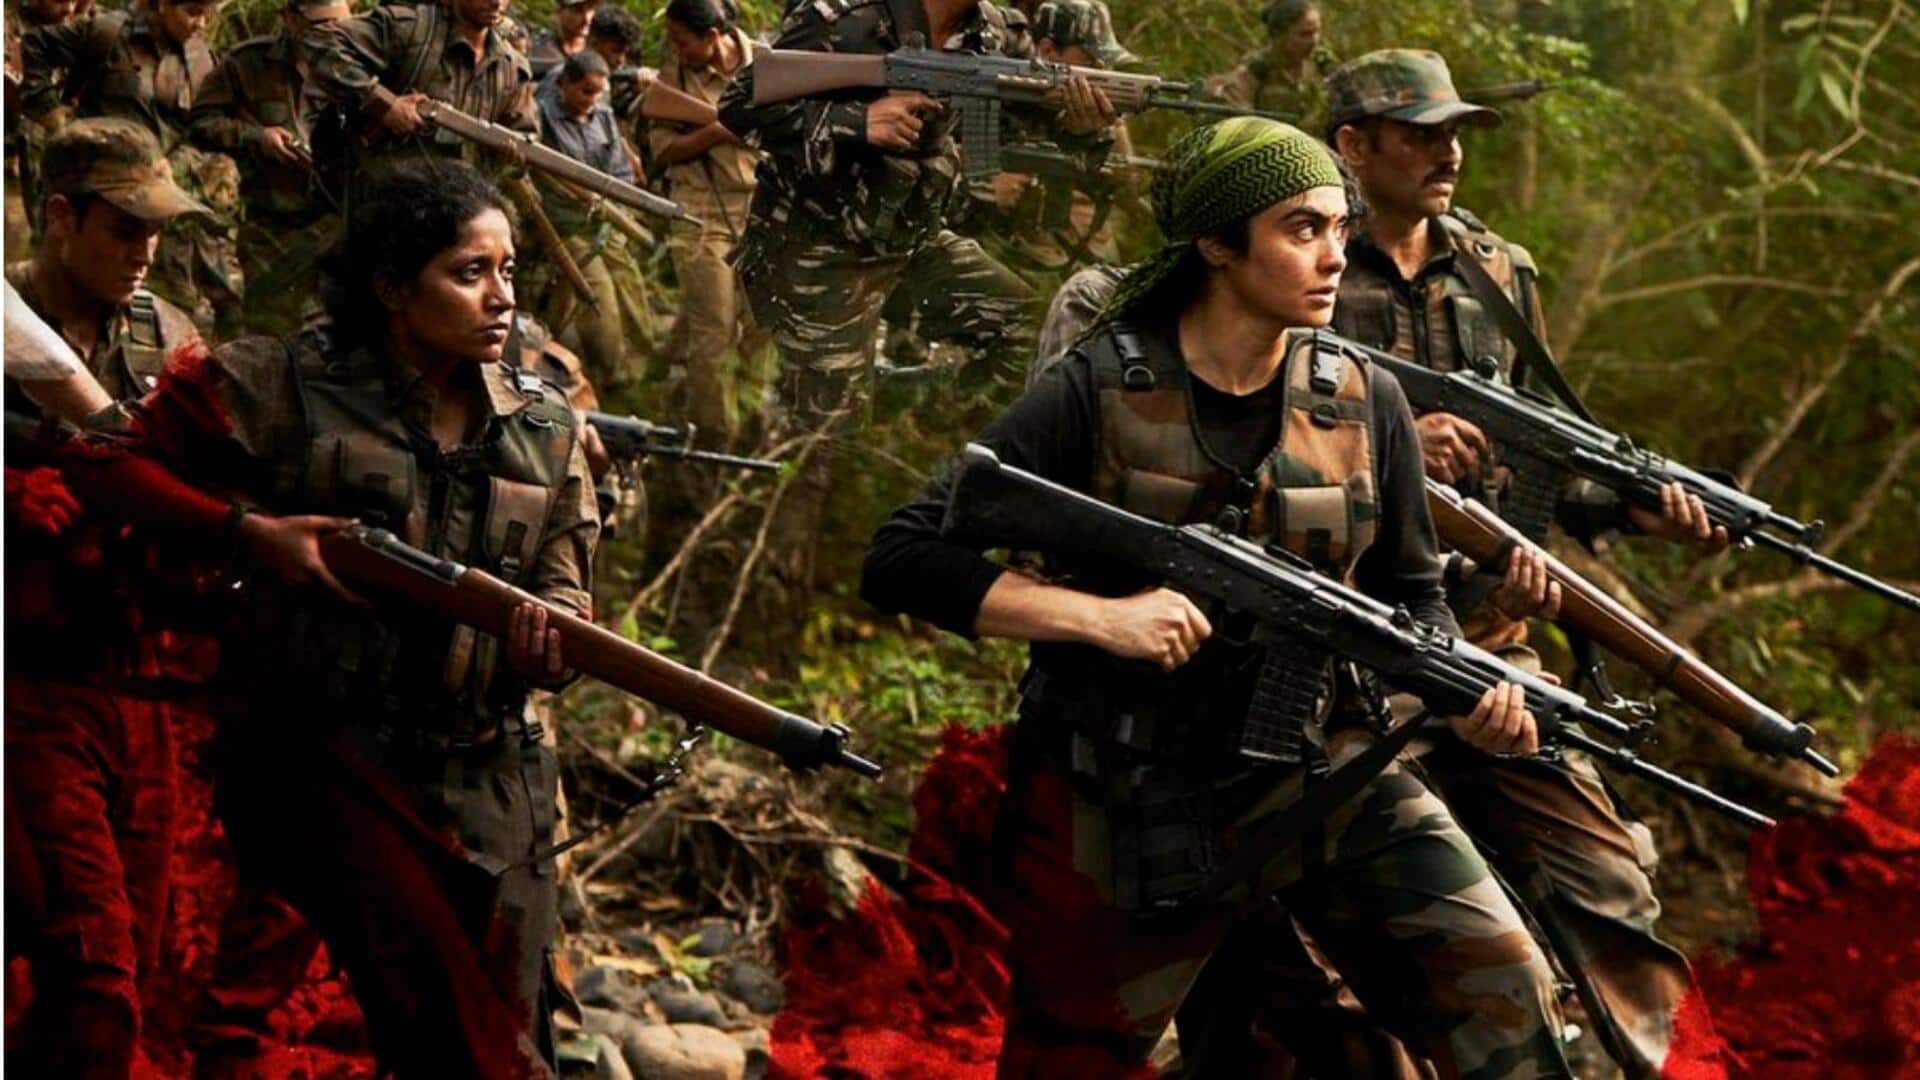 अदा शर्मा की 'बस्तर' की एडवांस बुकिंग शुरू, जानिए कब सिनेमाघरों का रुख करेगी फिल्म 